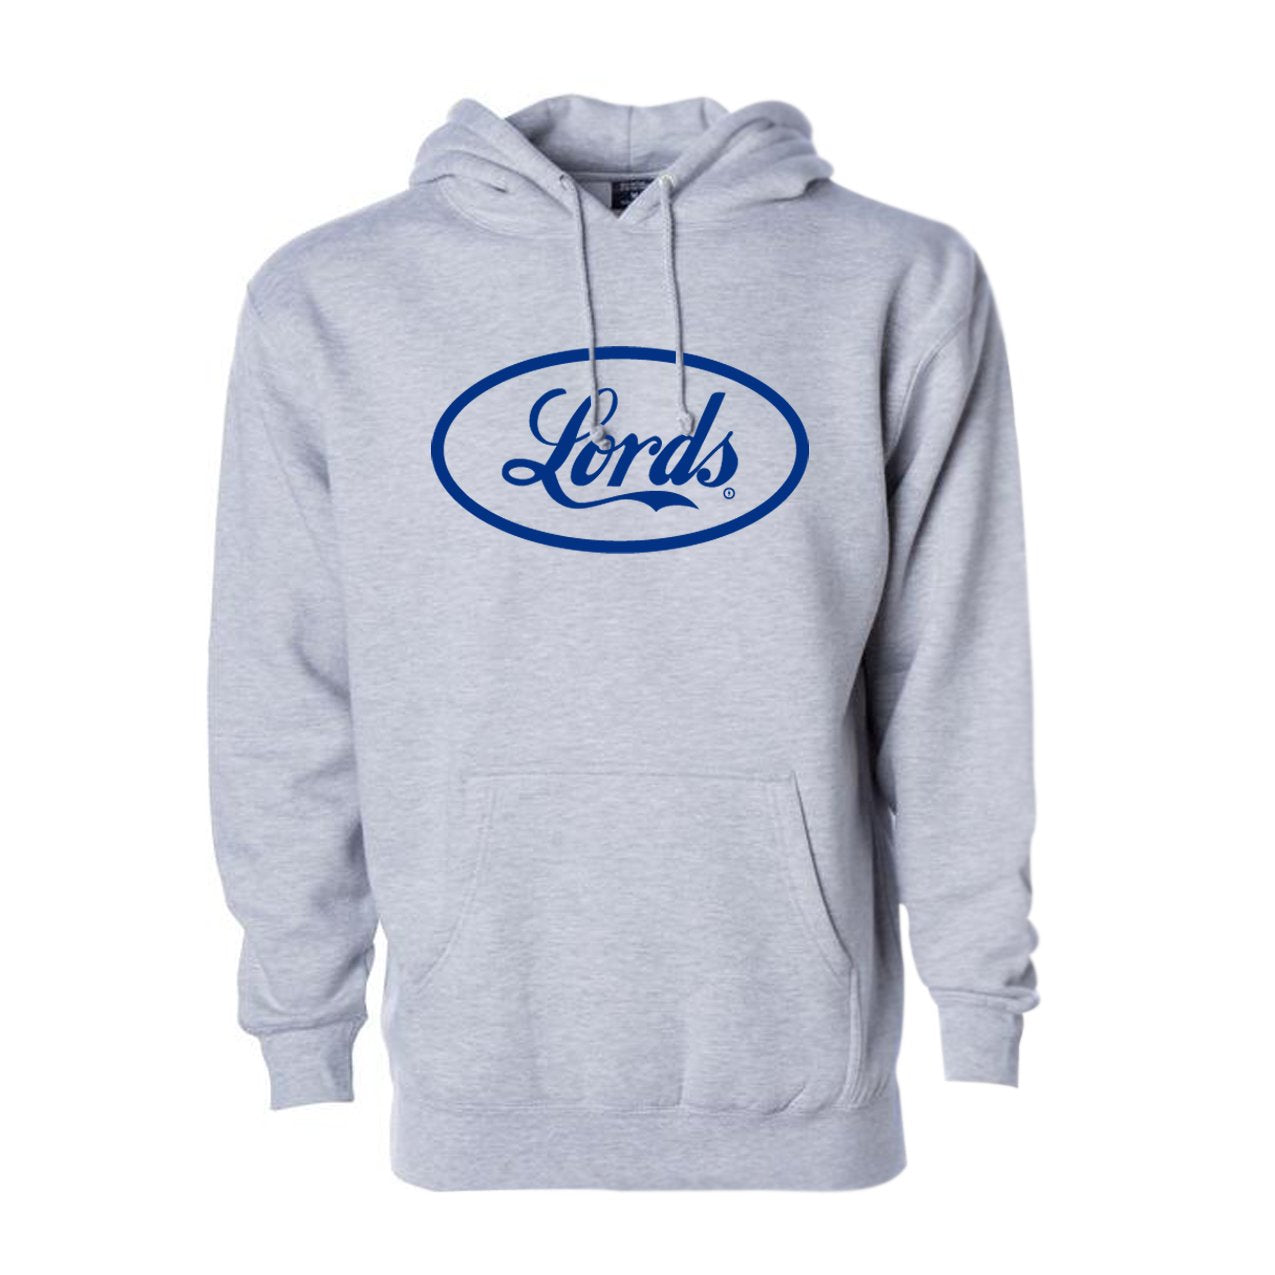 Lords Motors Sweatsuit Hoodie